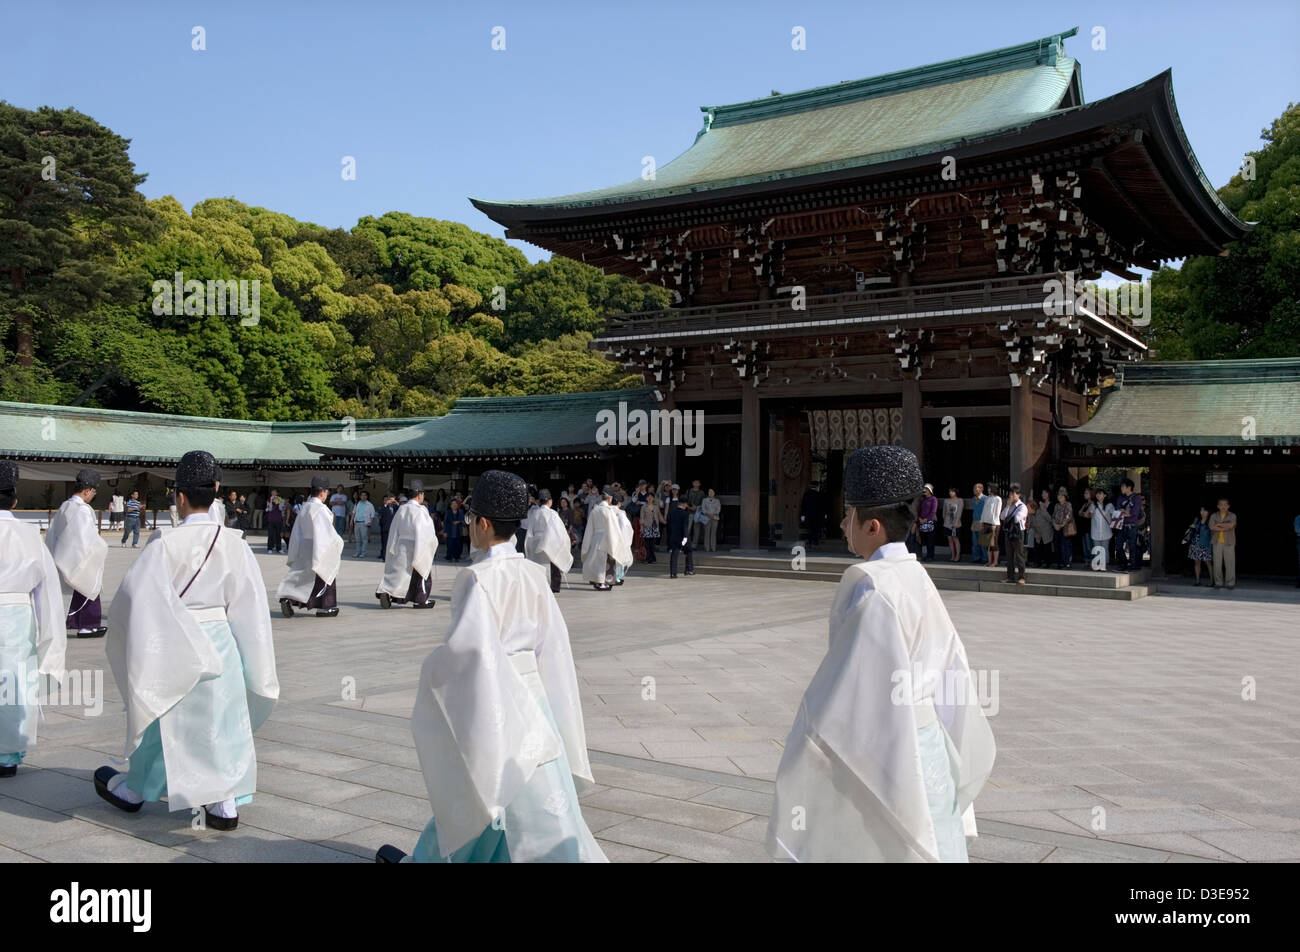 Les prêtres Shinto mars dans une procession à travers la porte principale de Meiji Jingu durant une cérémonie religieuse à Tokyo, Japon. Banque D'Images